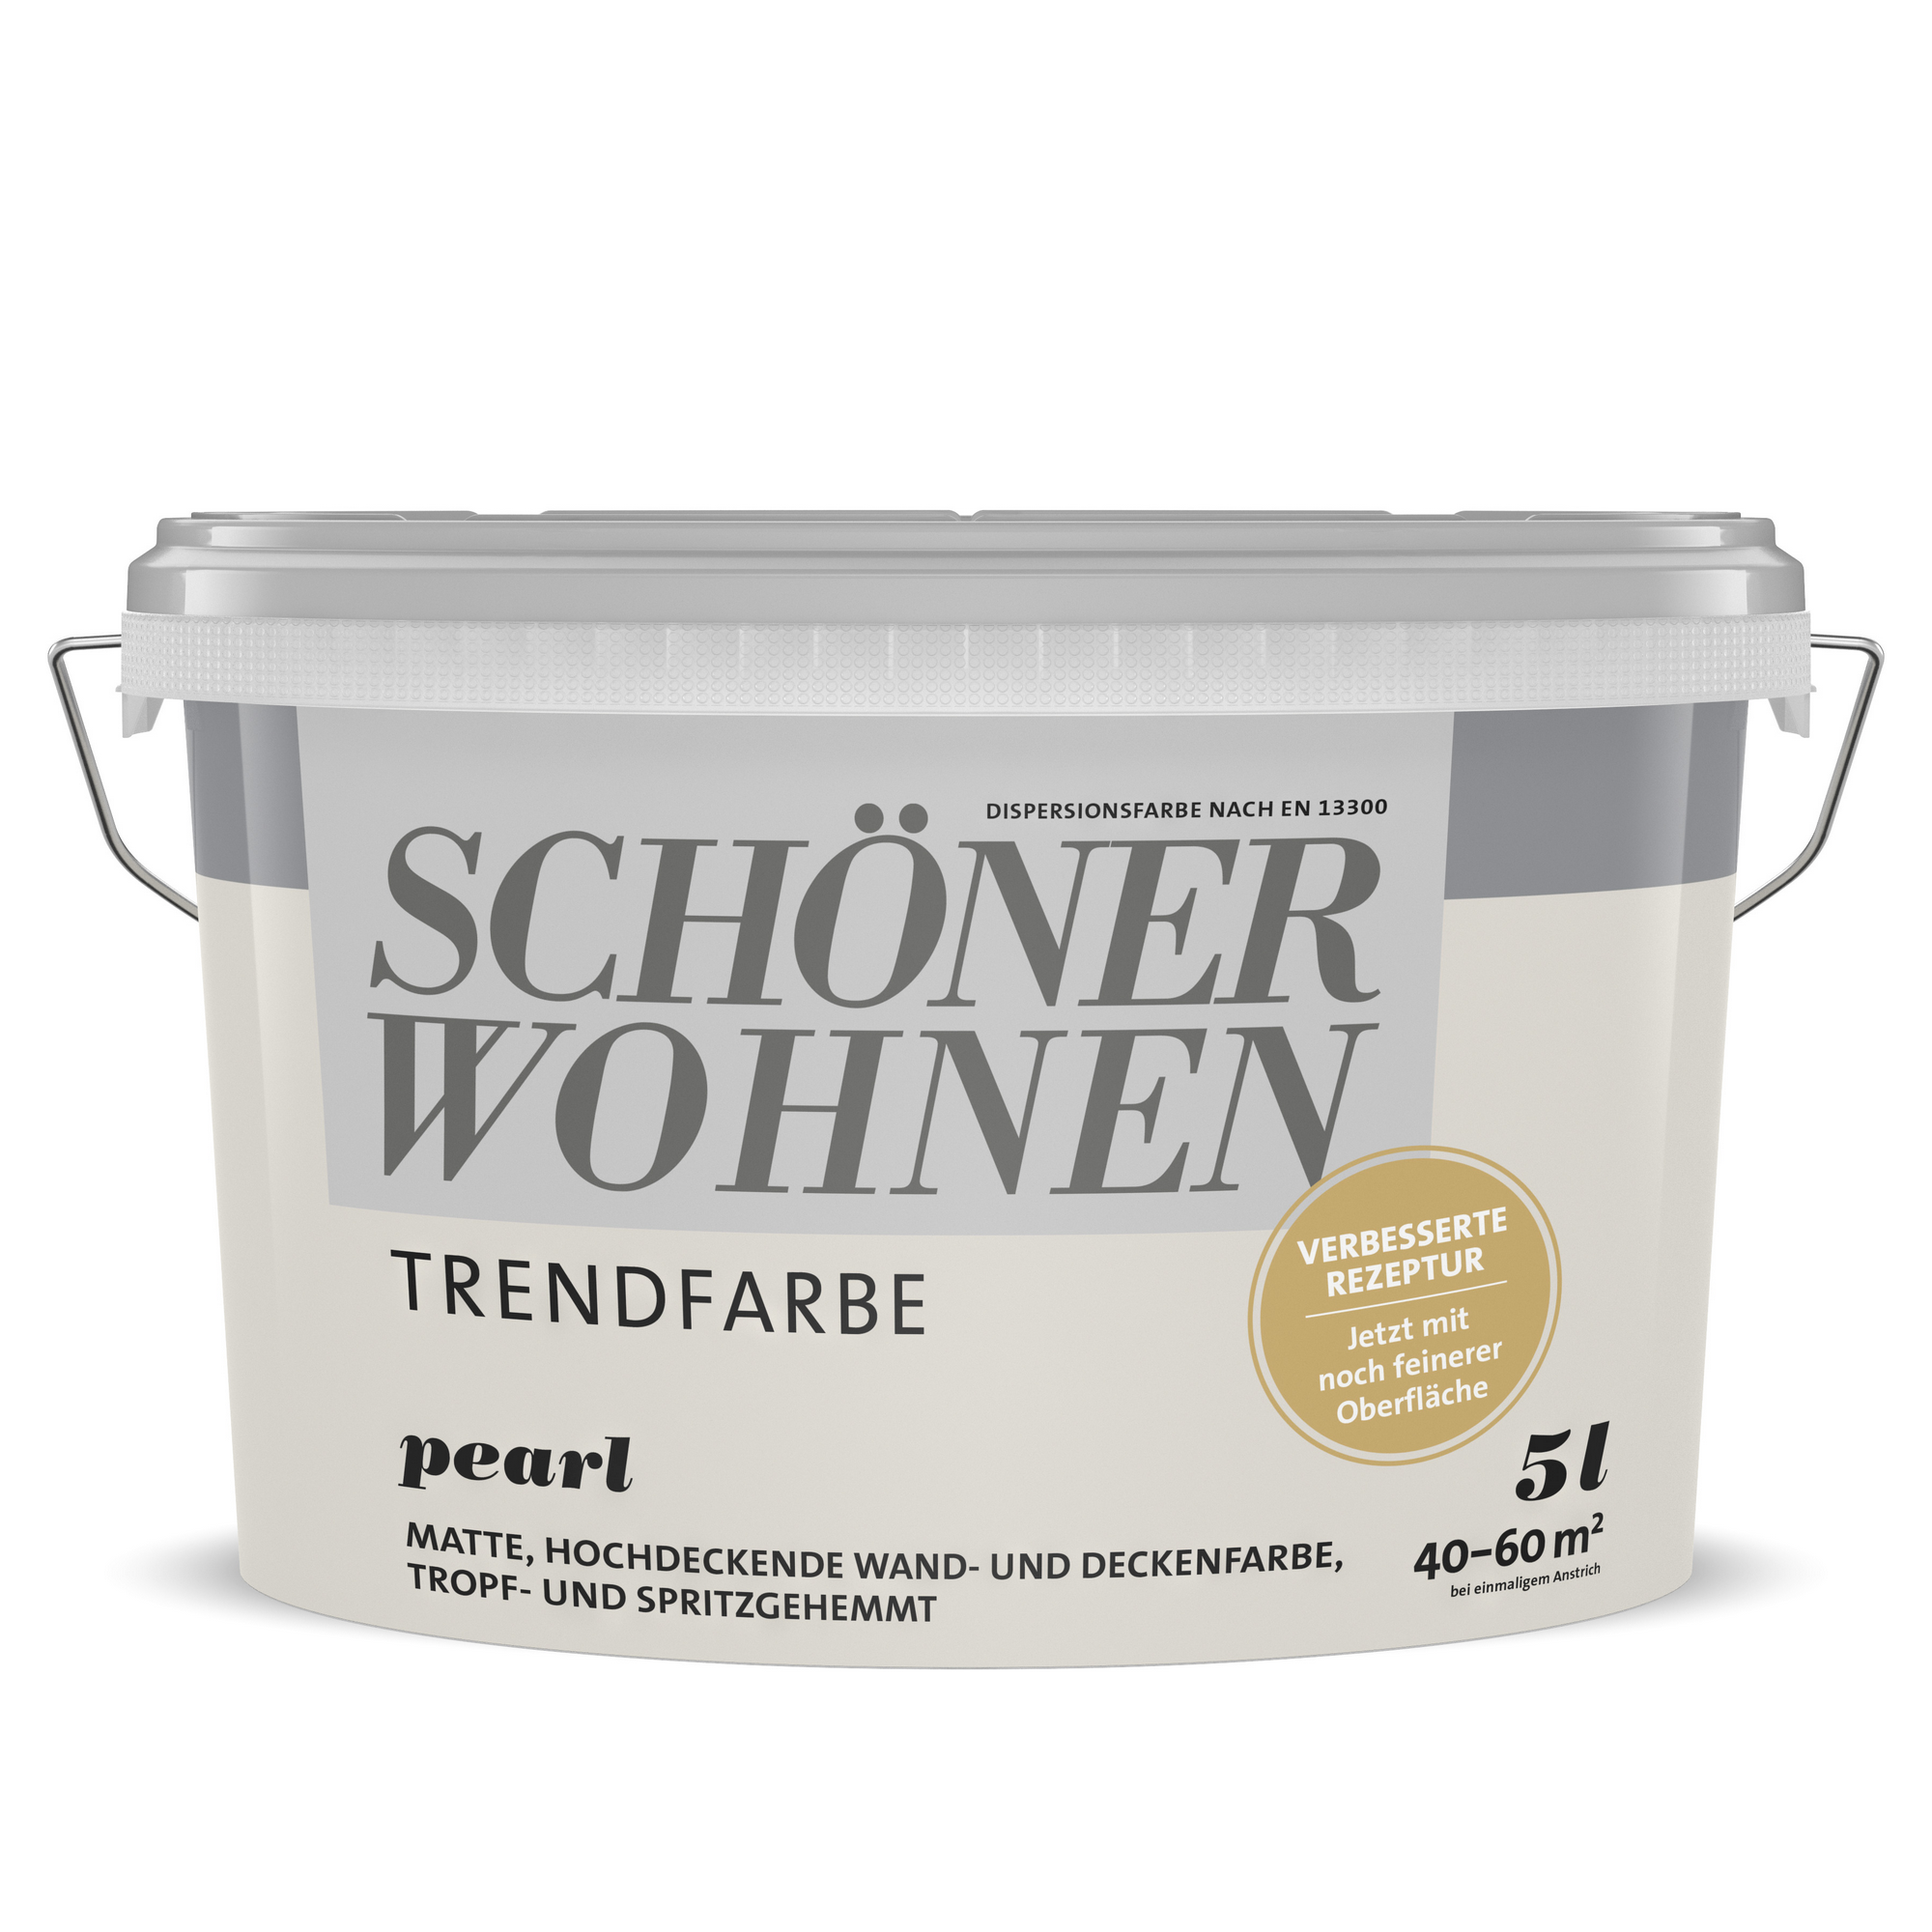 Trendfarbe 'Pearl' perlweiß matt 5 l + product picture